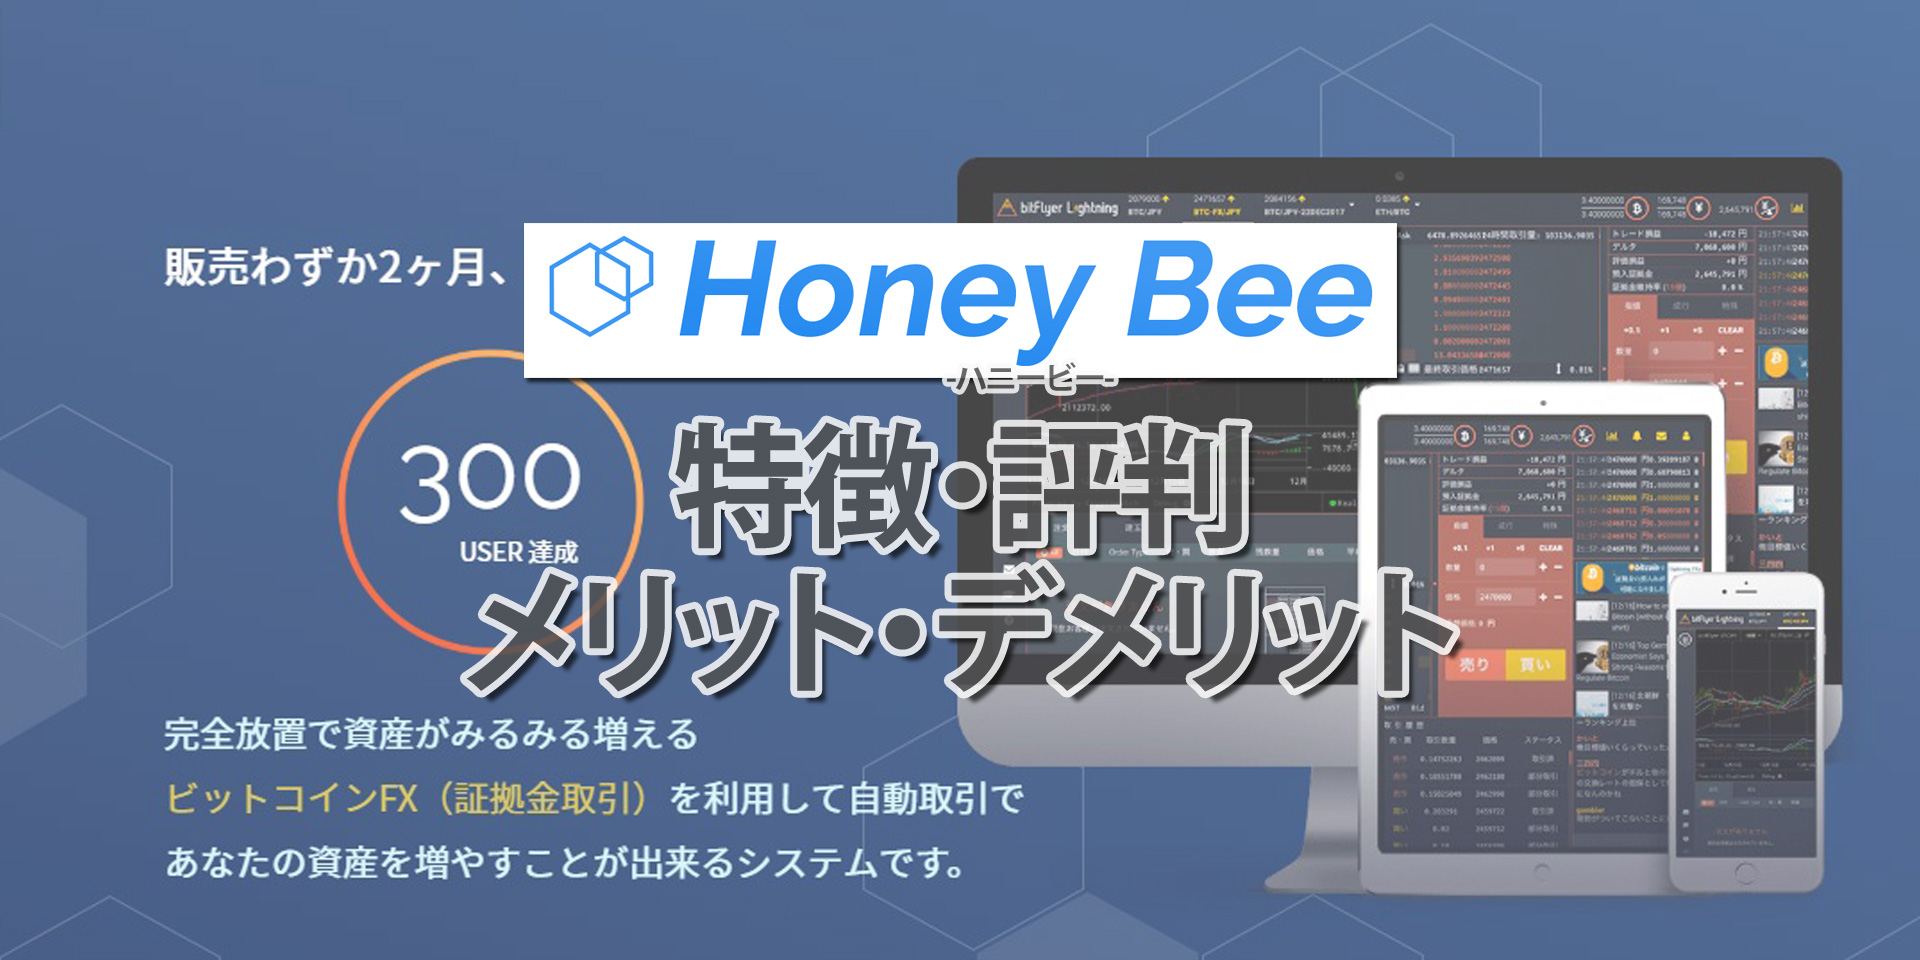 Honey Bee(ハニービー)とは？人工知能(AI)搭載ビットコインFX自動売買ツールのメリットデメリット、評判を検証